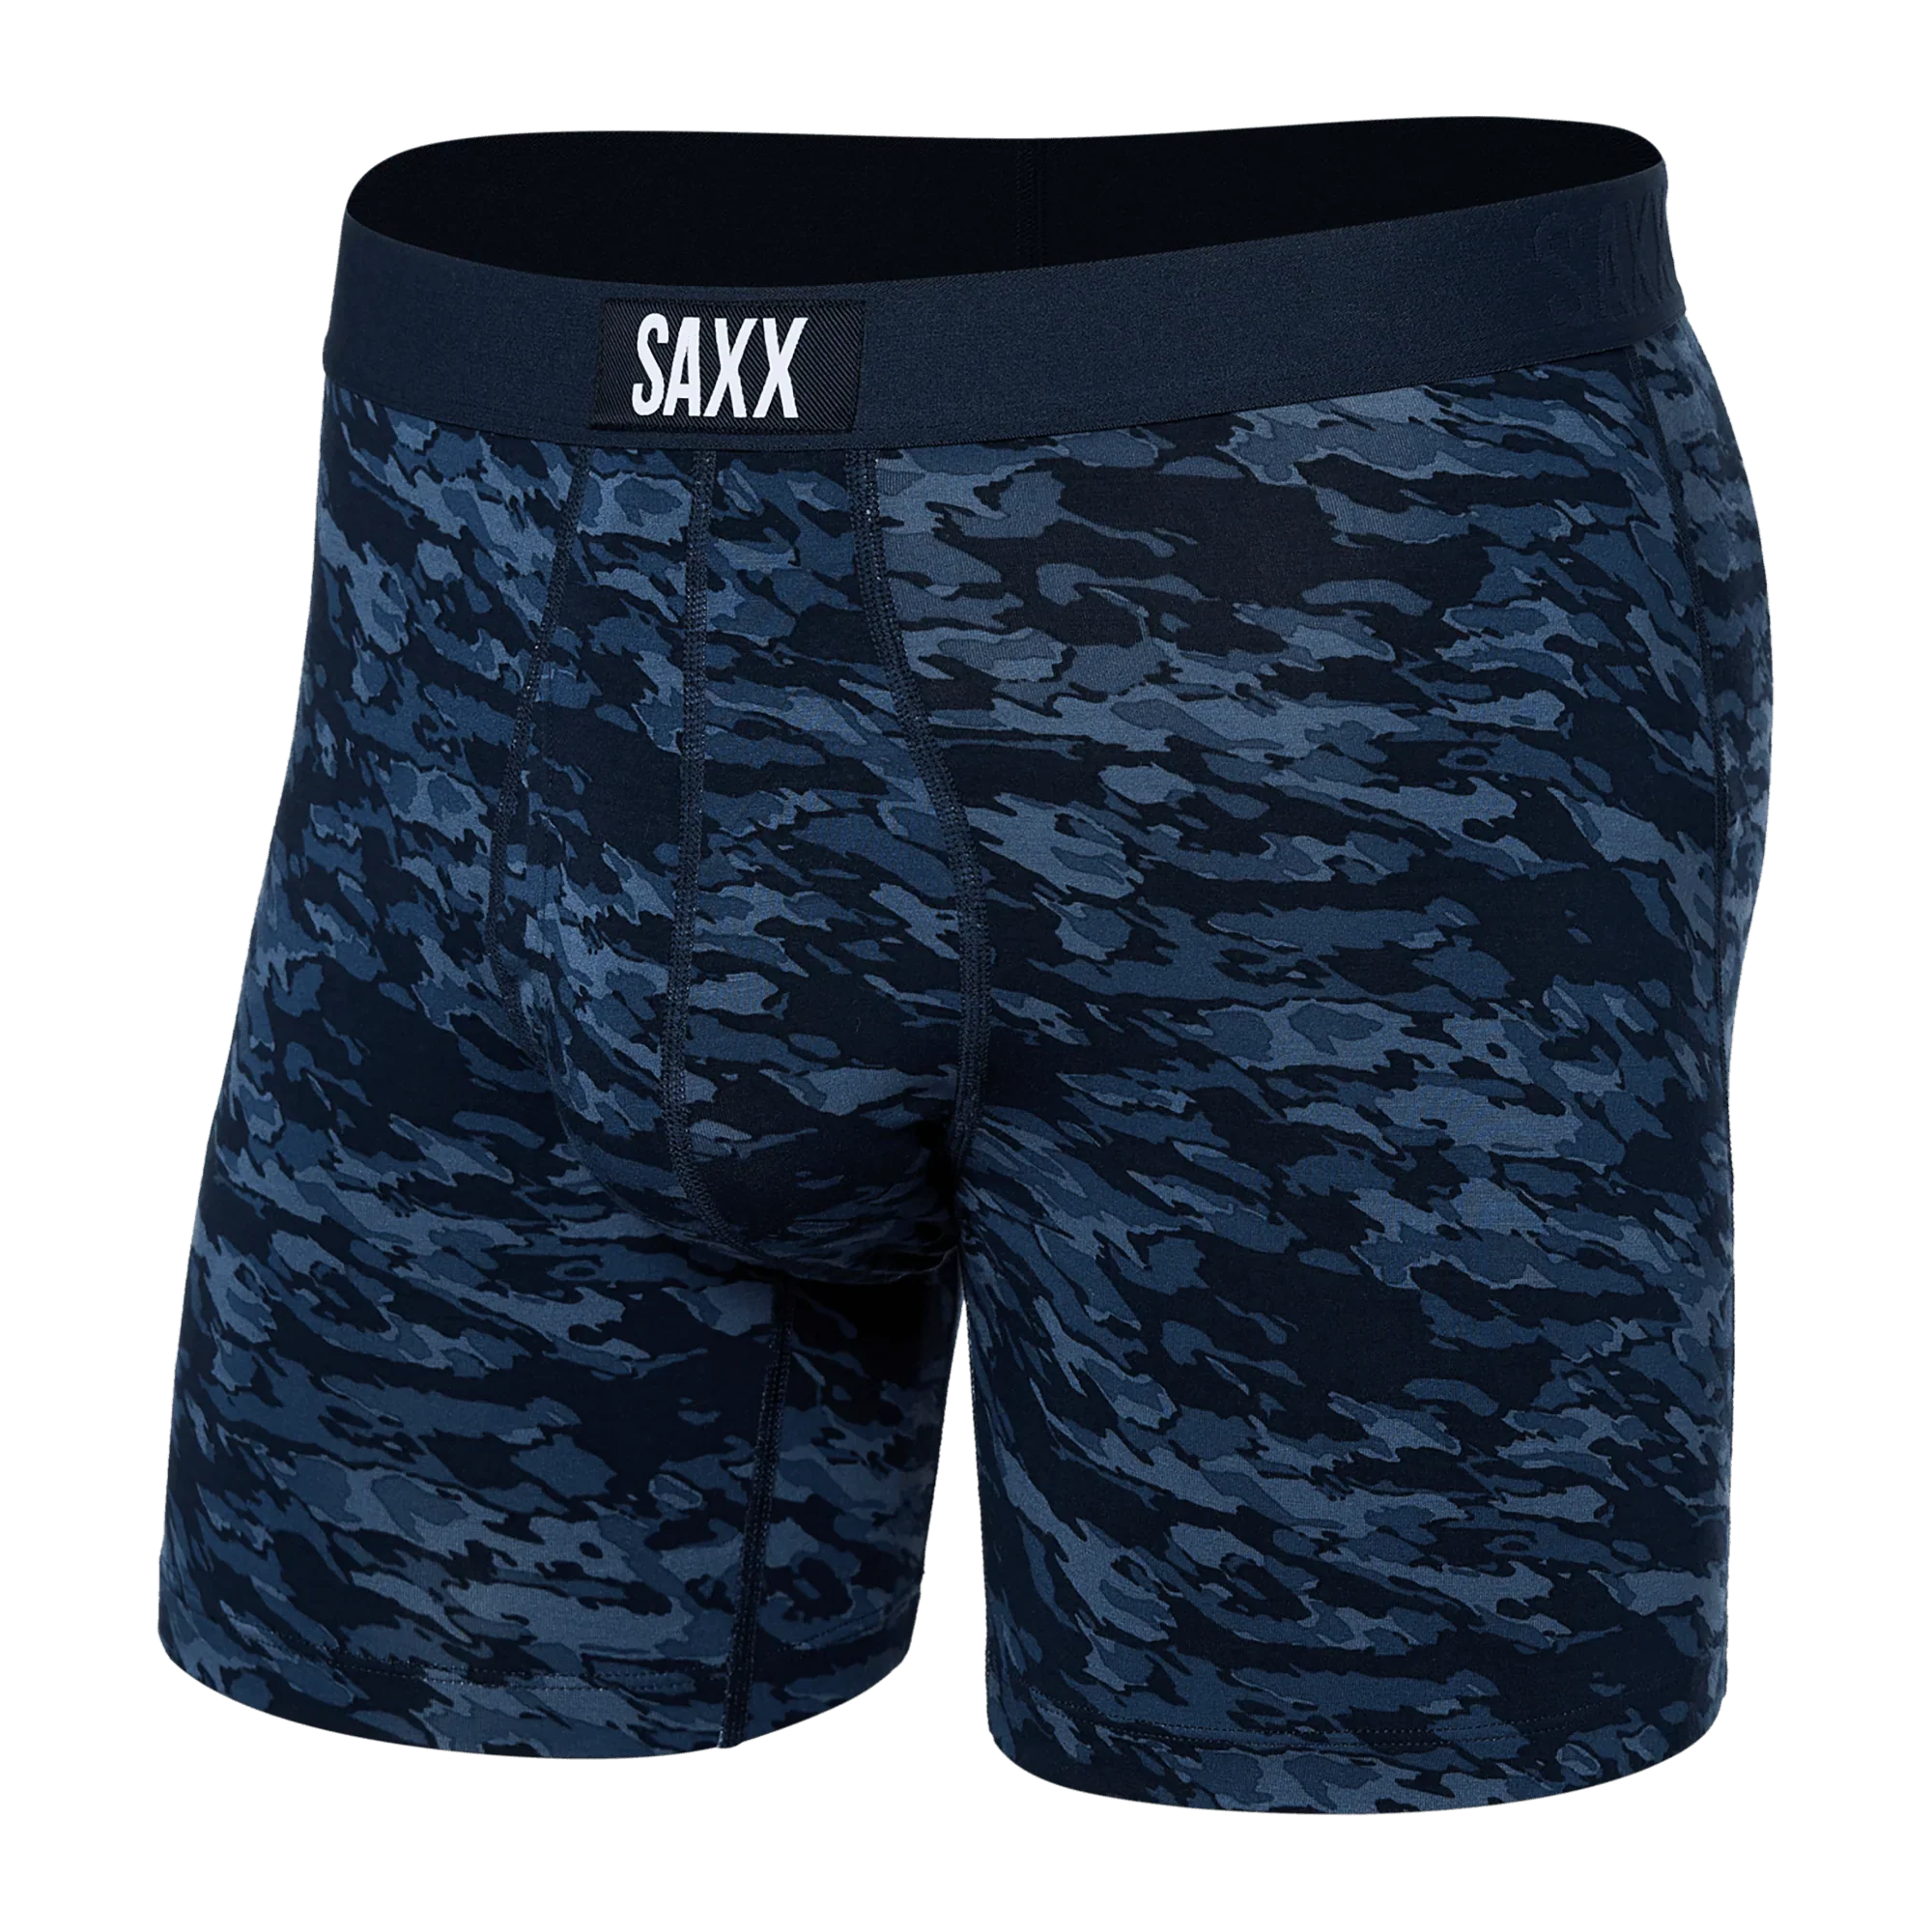 'SAXX Ultra Super Soft Boxer Brief - Basin Camo' in 'Navy' colour